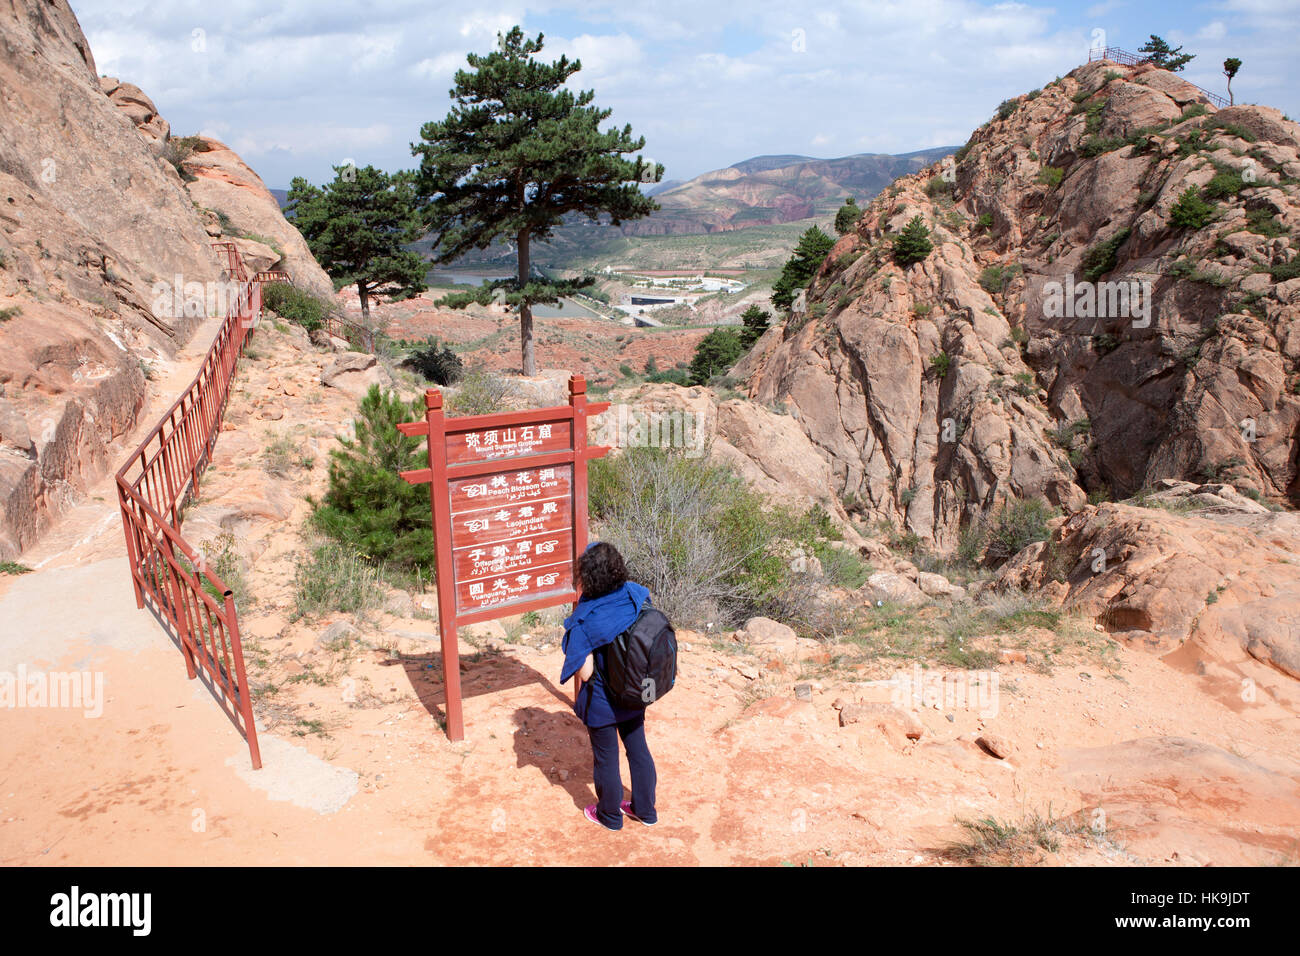 Un touriste a l'air le conseil avec les directions des chemins à Xumi grottes Shan. Sanying, Guyuan, Ningxia, Chine Banque D'Images